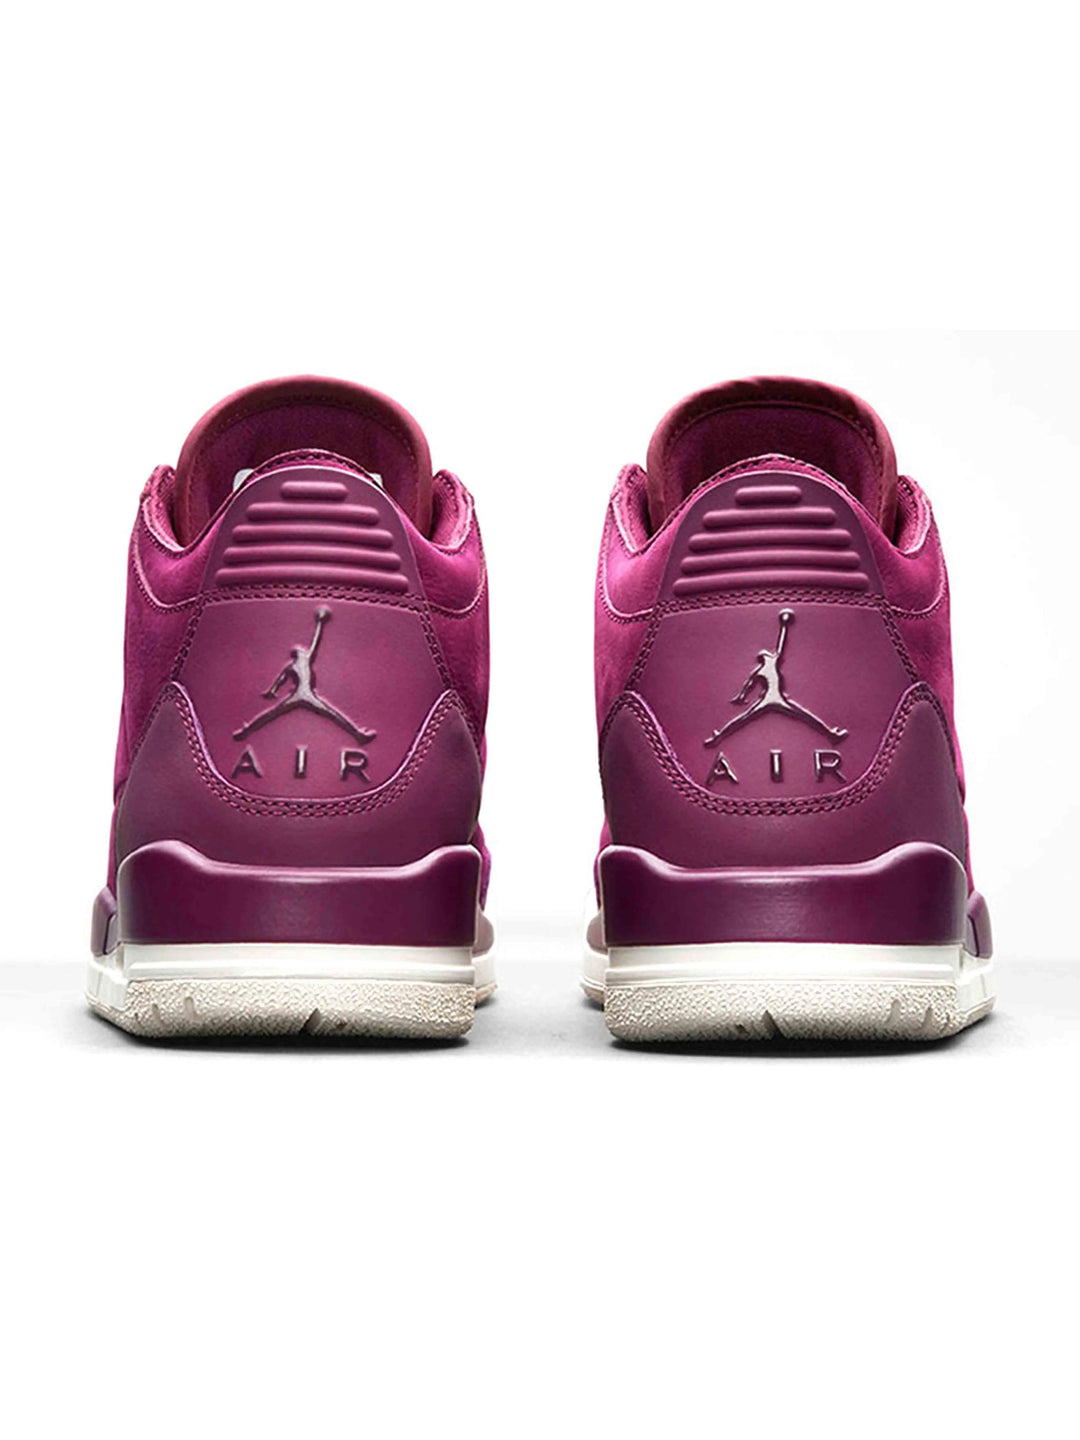 Nike Air Jordan 3 Retro Bordeaux (W) Prior